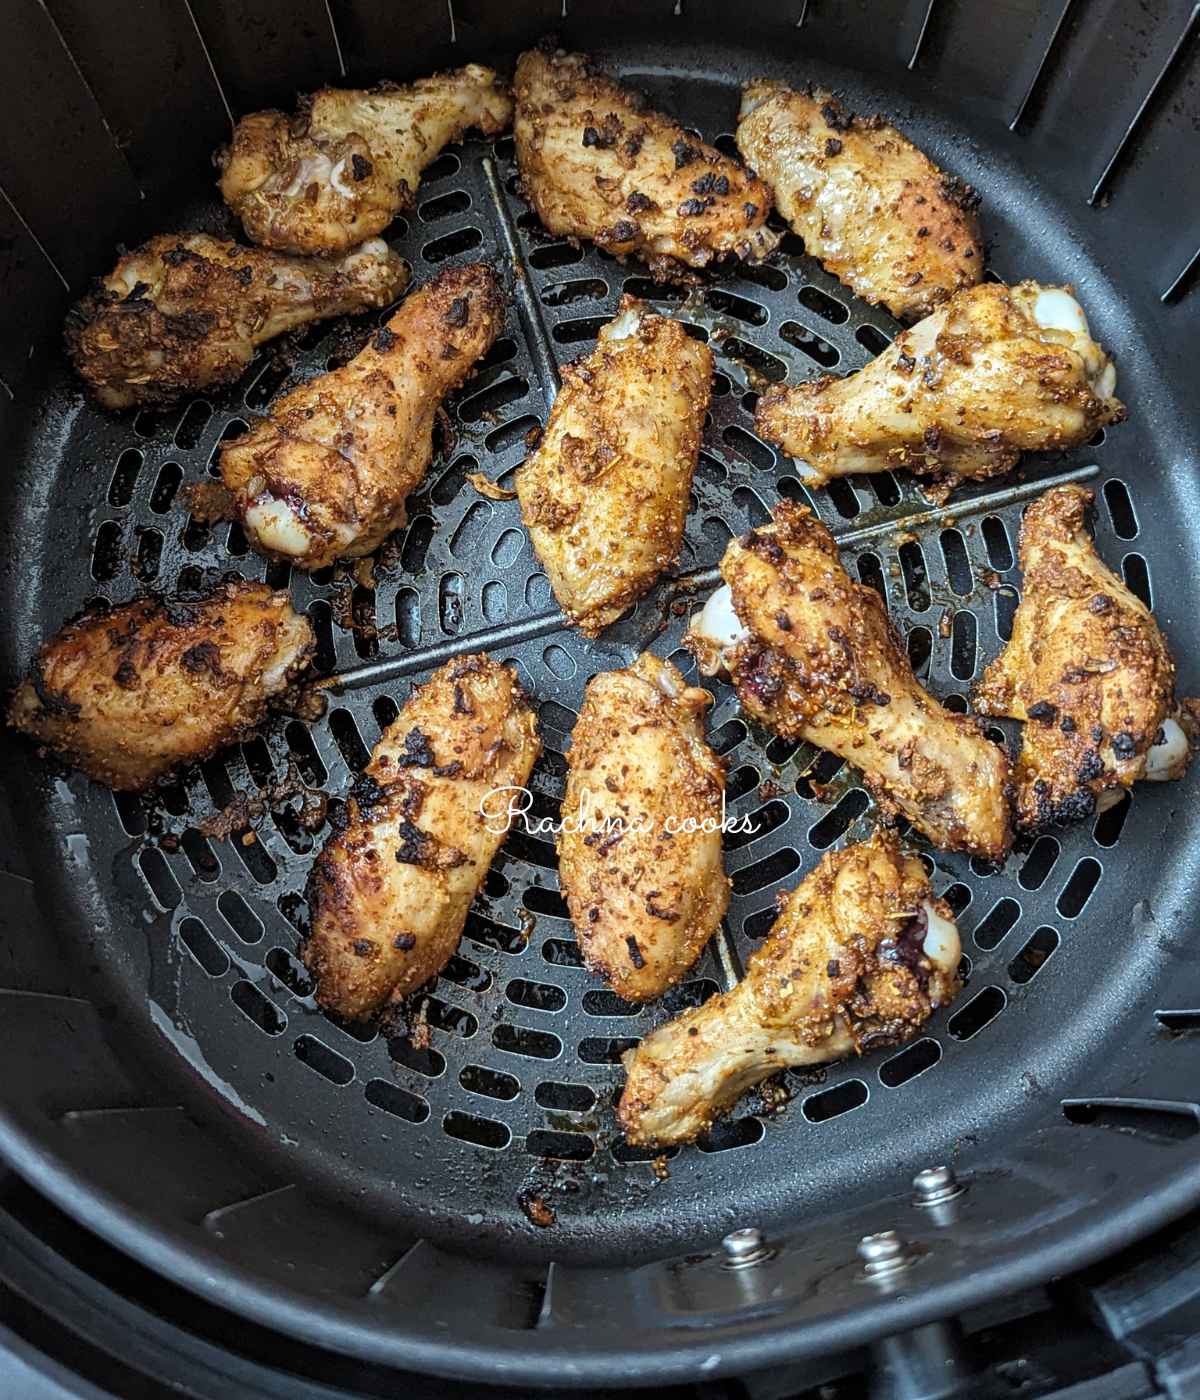 Jerk chicken wings after air frying in air fryer basket.